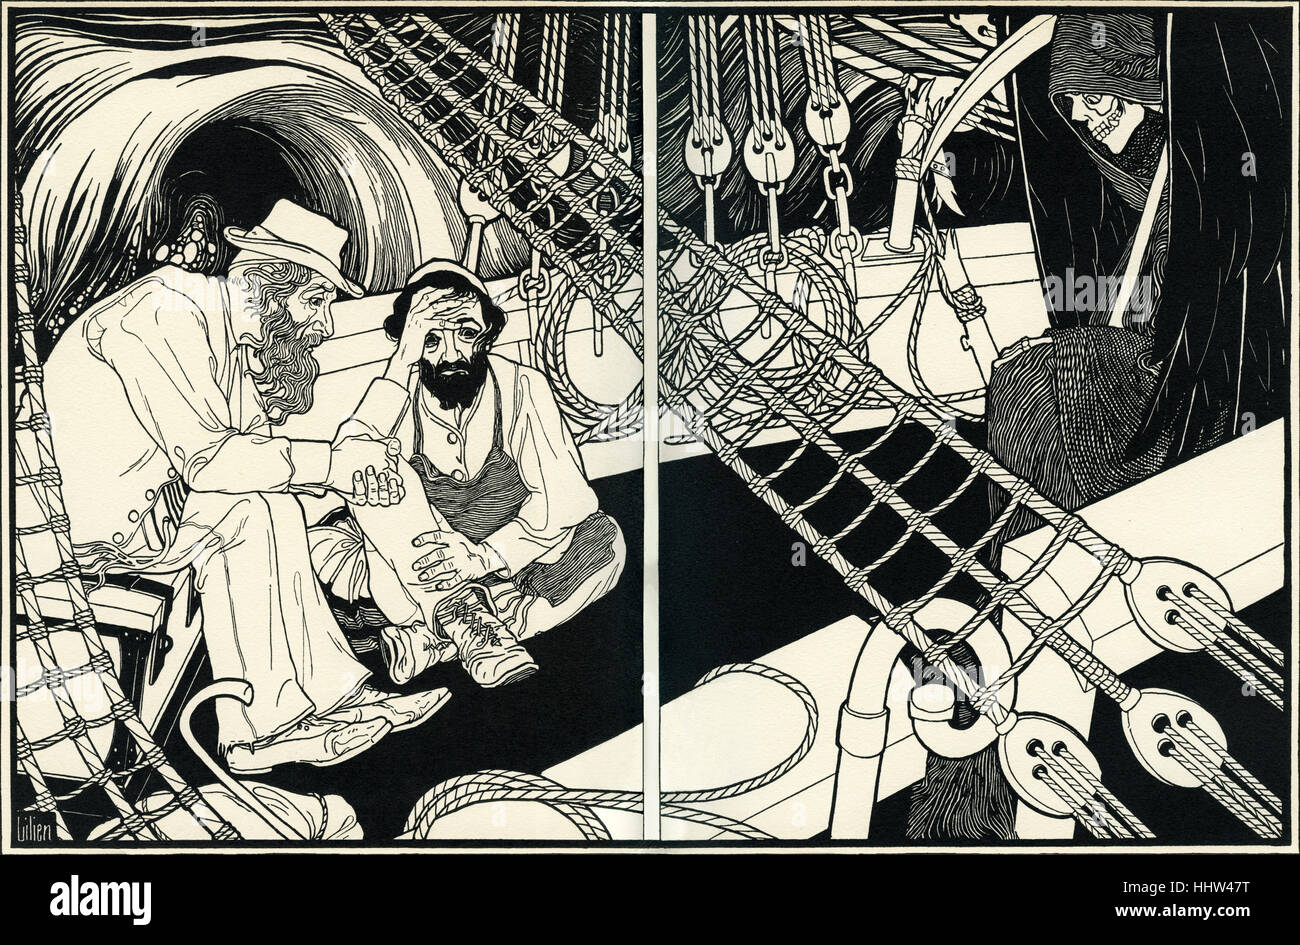 Efraín Moisés Lilien ilustración para Sturm (tormenta). Dos hombres judíos en barco en el mar, el mástil se rompe y se sienta a esperar la muerte Foto de stock